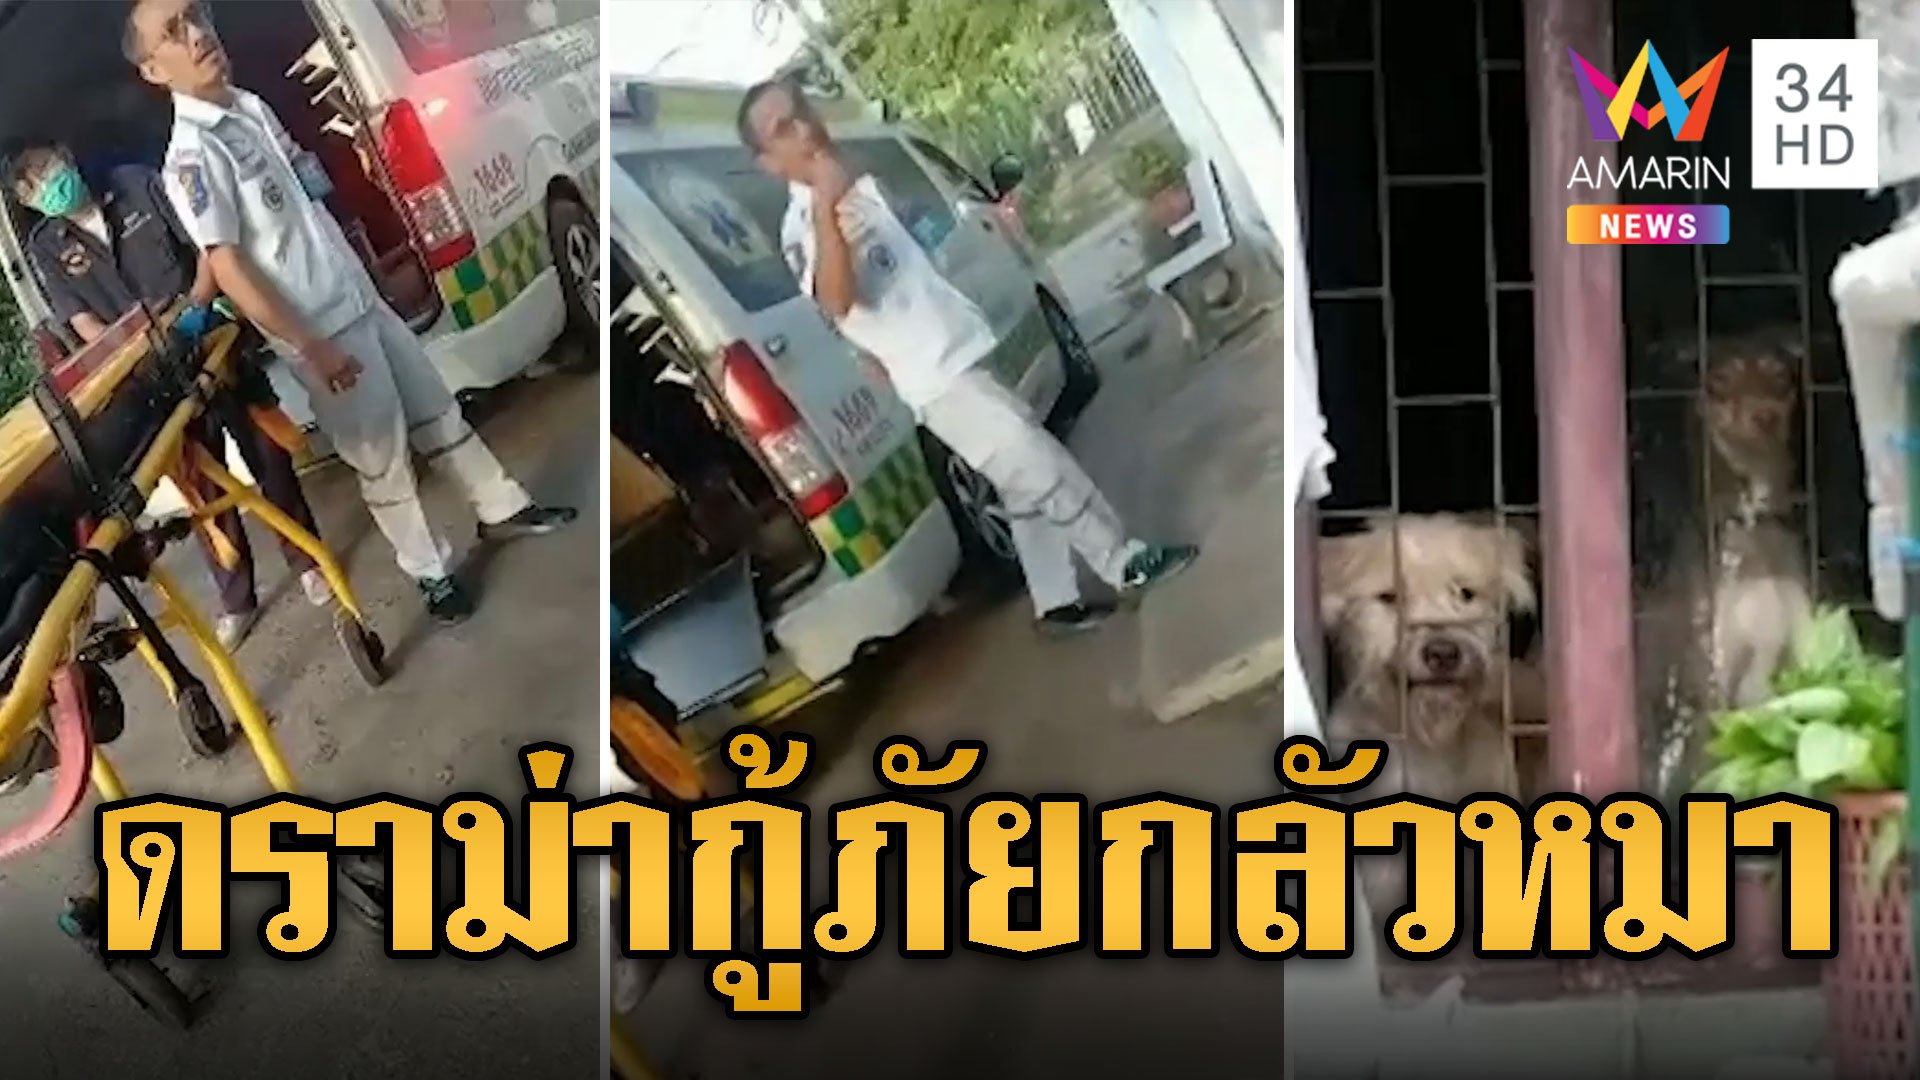 กู้ภัยกลัวหมา เจอดราม่าไม่กล้าช่วยผู้ป่วย | ข่าวอรุณอมรินทร์ | 7 มิ.ย. 67 | AMARIN TVHD34